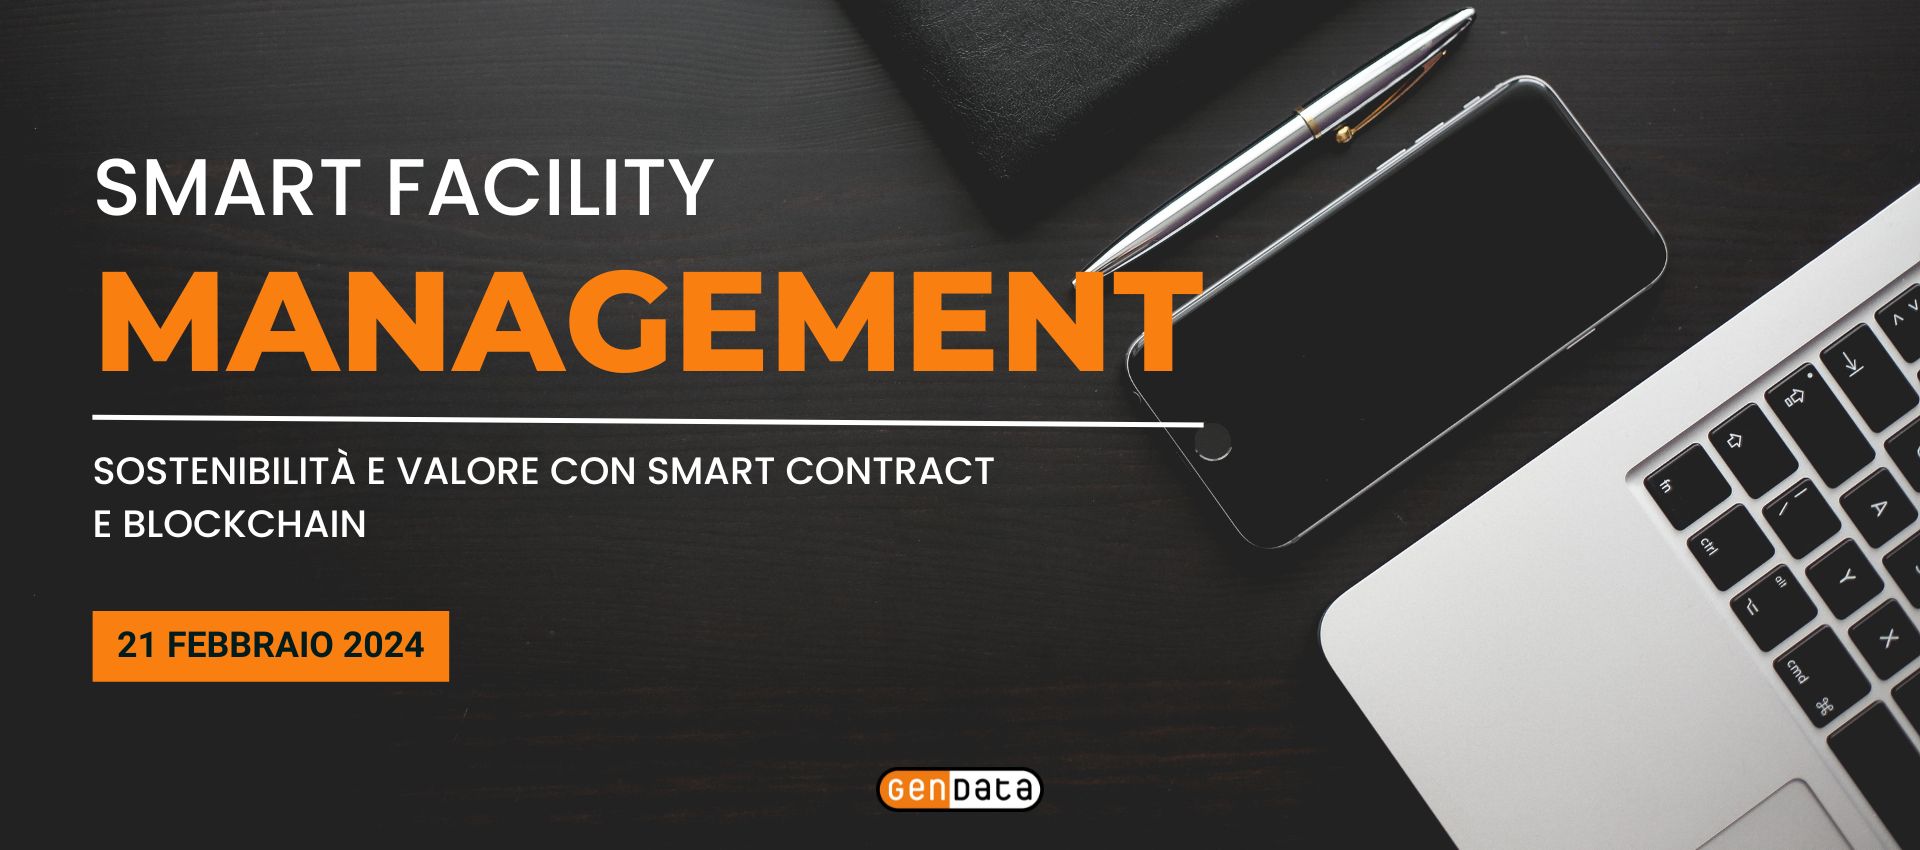 Smart Facility Management Sostenibilità e valore con Smart Contract e Blockchain - 21 Febbraio 2024